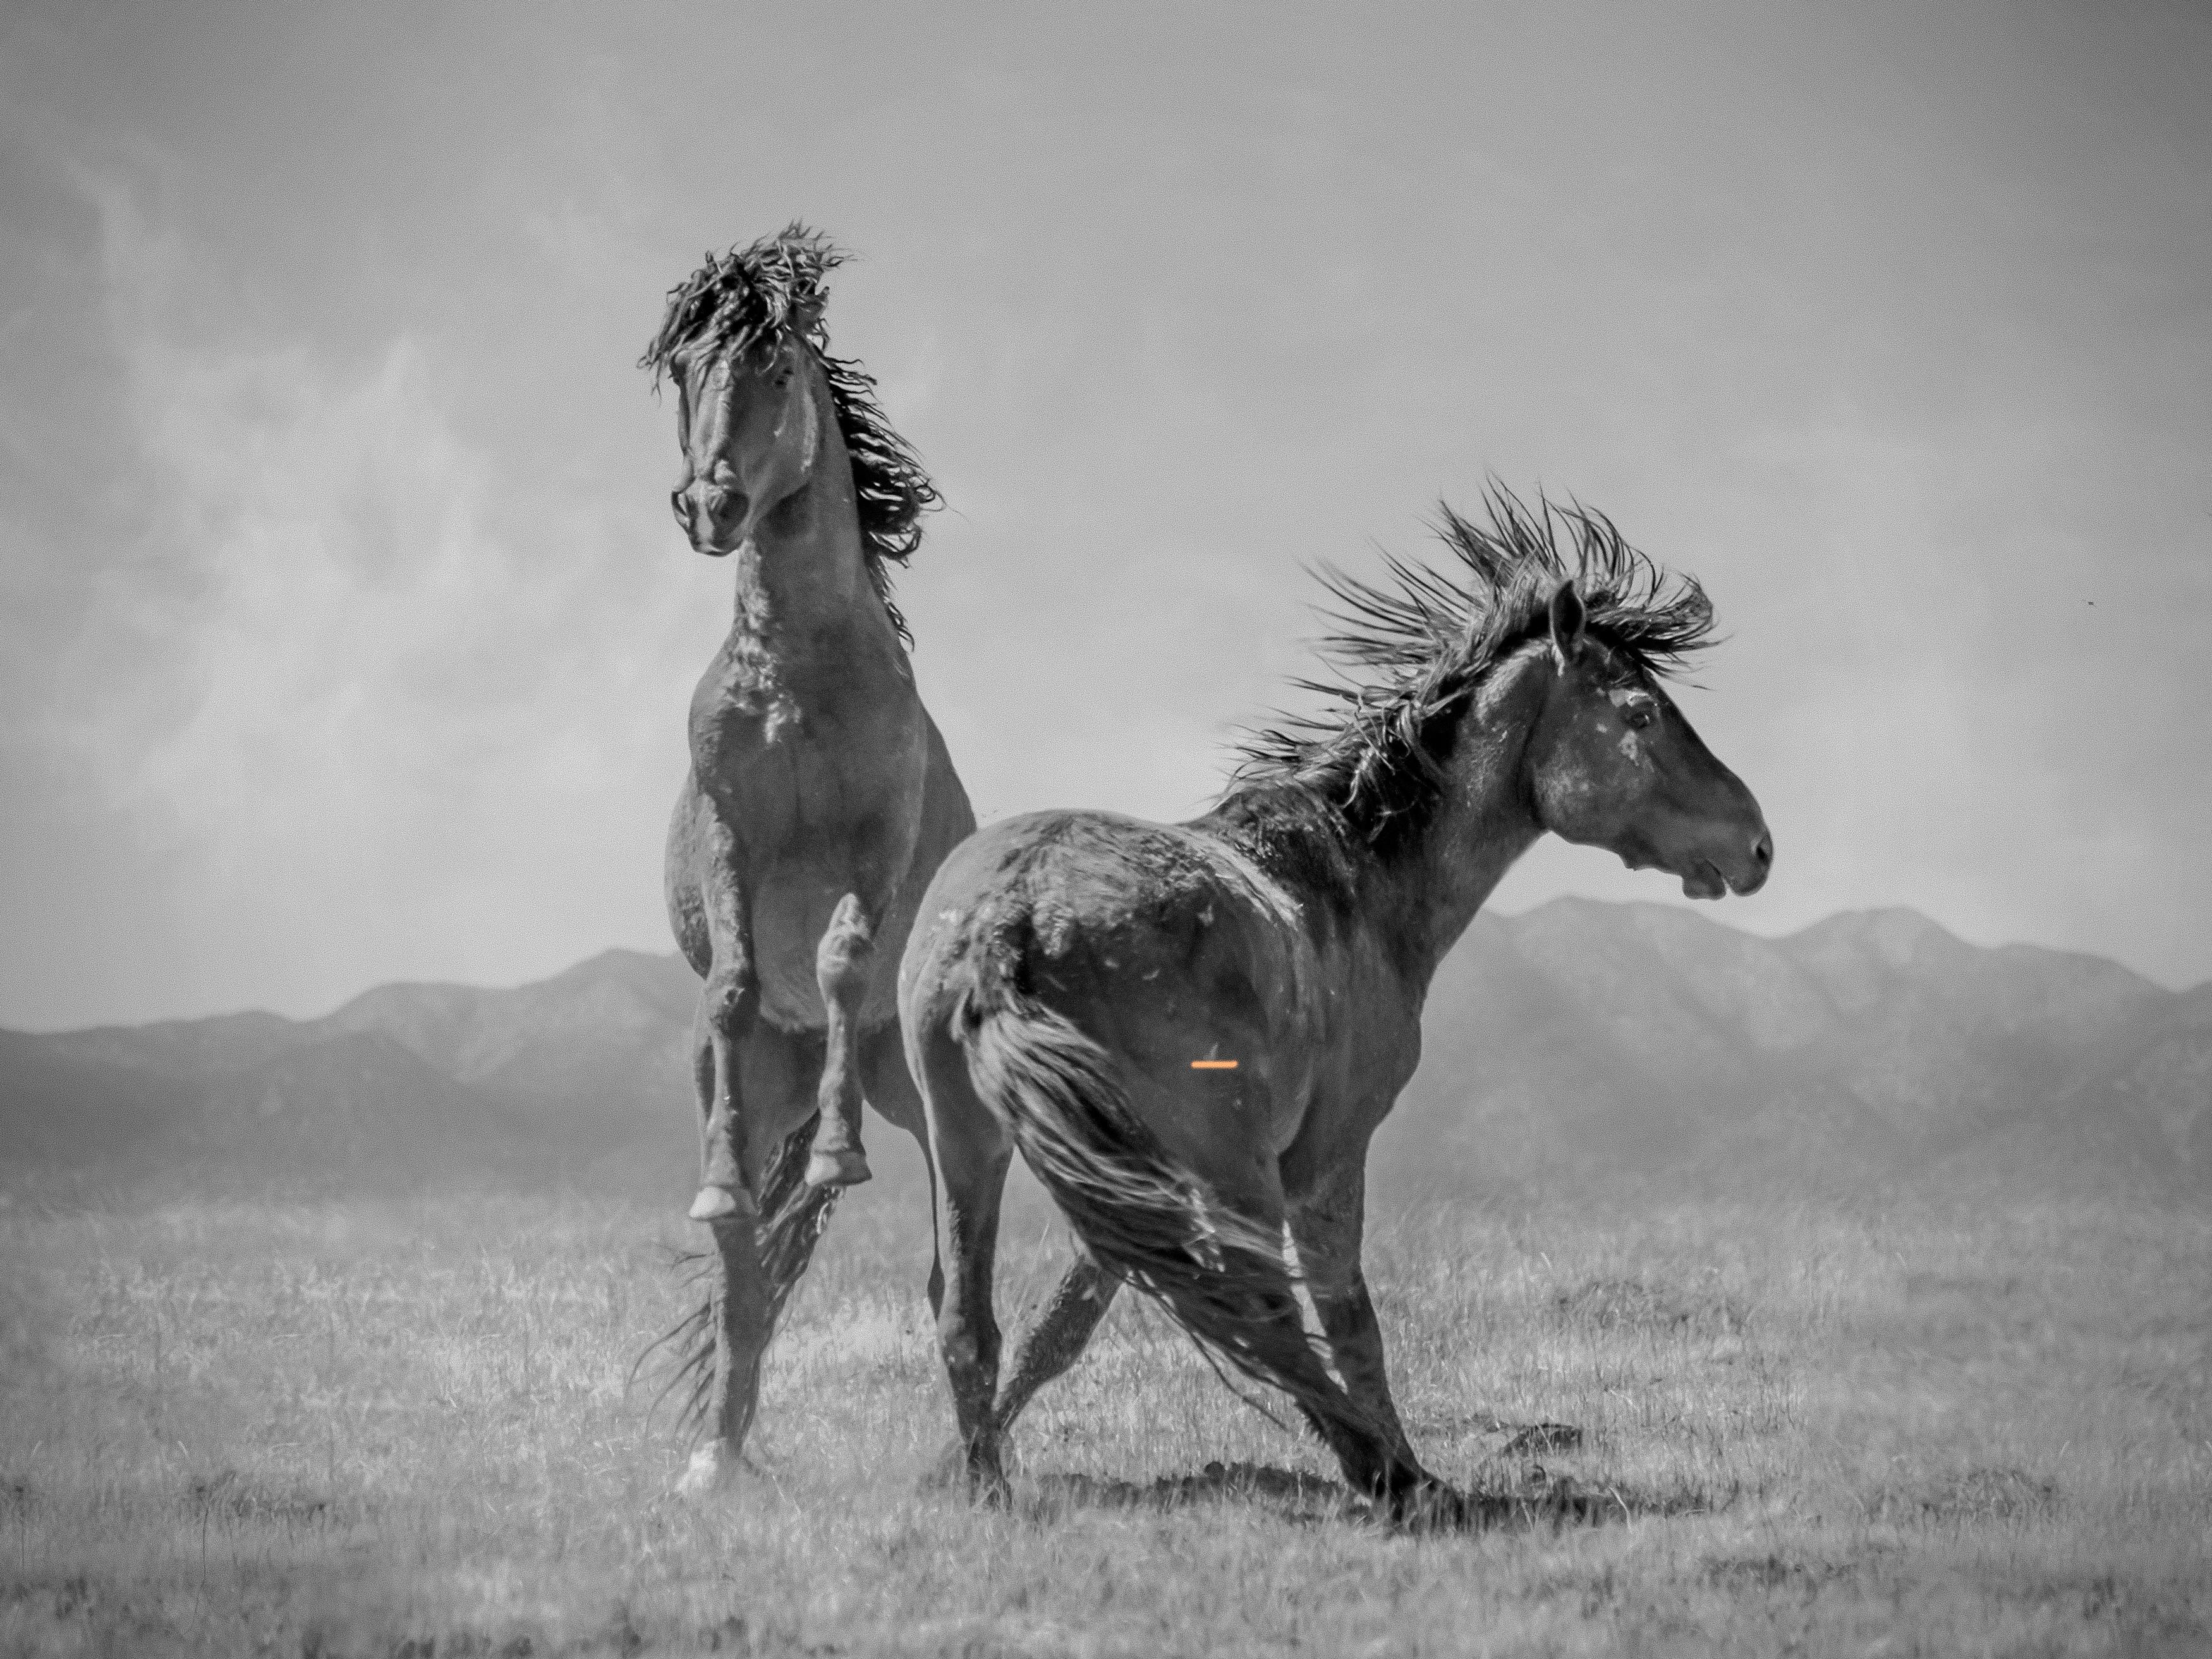 Animal Print Shane Russeck - "Wonder Horses" 40x50 - Photographie en noir et blanc, chevaux sauvages moutons non signés